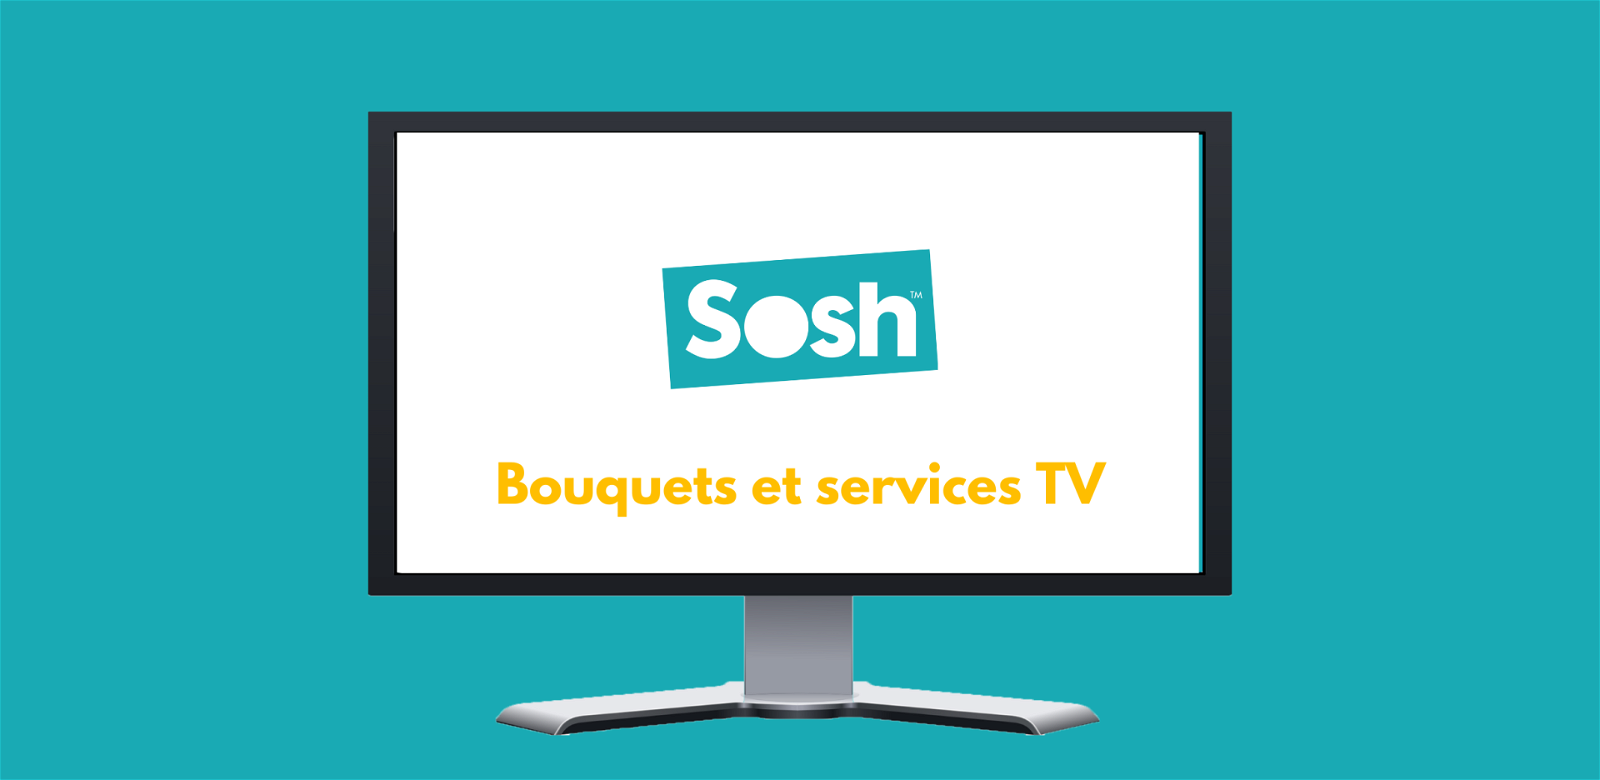 SoshTV : chaines, bouquets et service TV